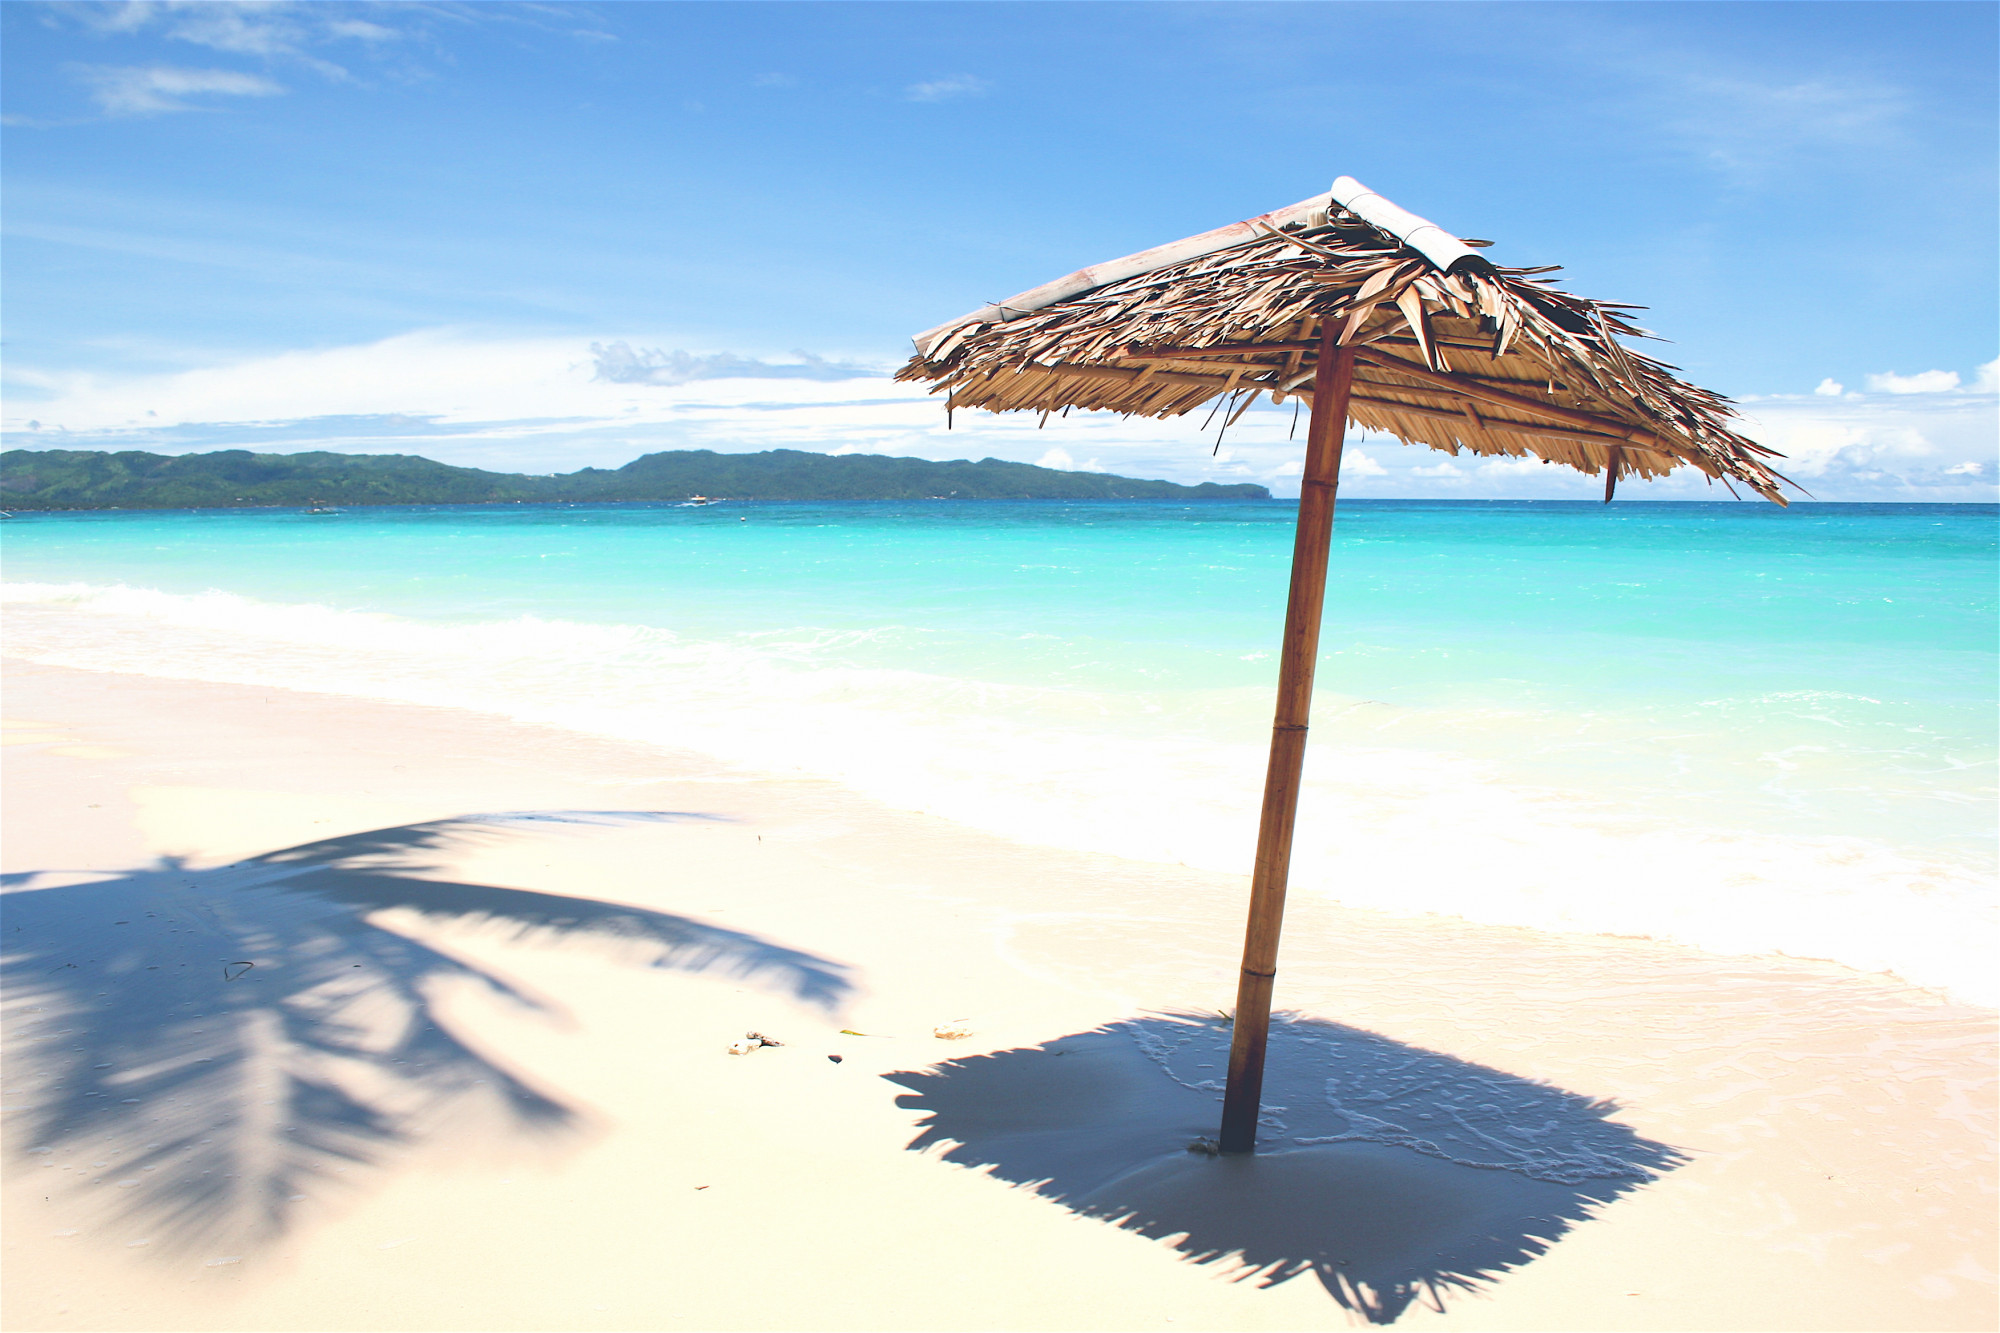 Bãi biển Trắng, Boracay, Philippines Đúng như tên gọi của nó, bờ biển của White Beach gần như trong mờ trên làn nước biển xanh thẳm. Nâng tầm thư giãn lên một tầm cao mới và tận hưởng liệu pháp mát-xa kéo dài một giờ không tốn kém ngay trên bãi biển.